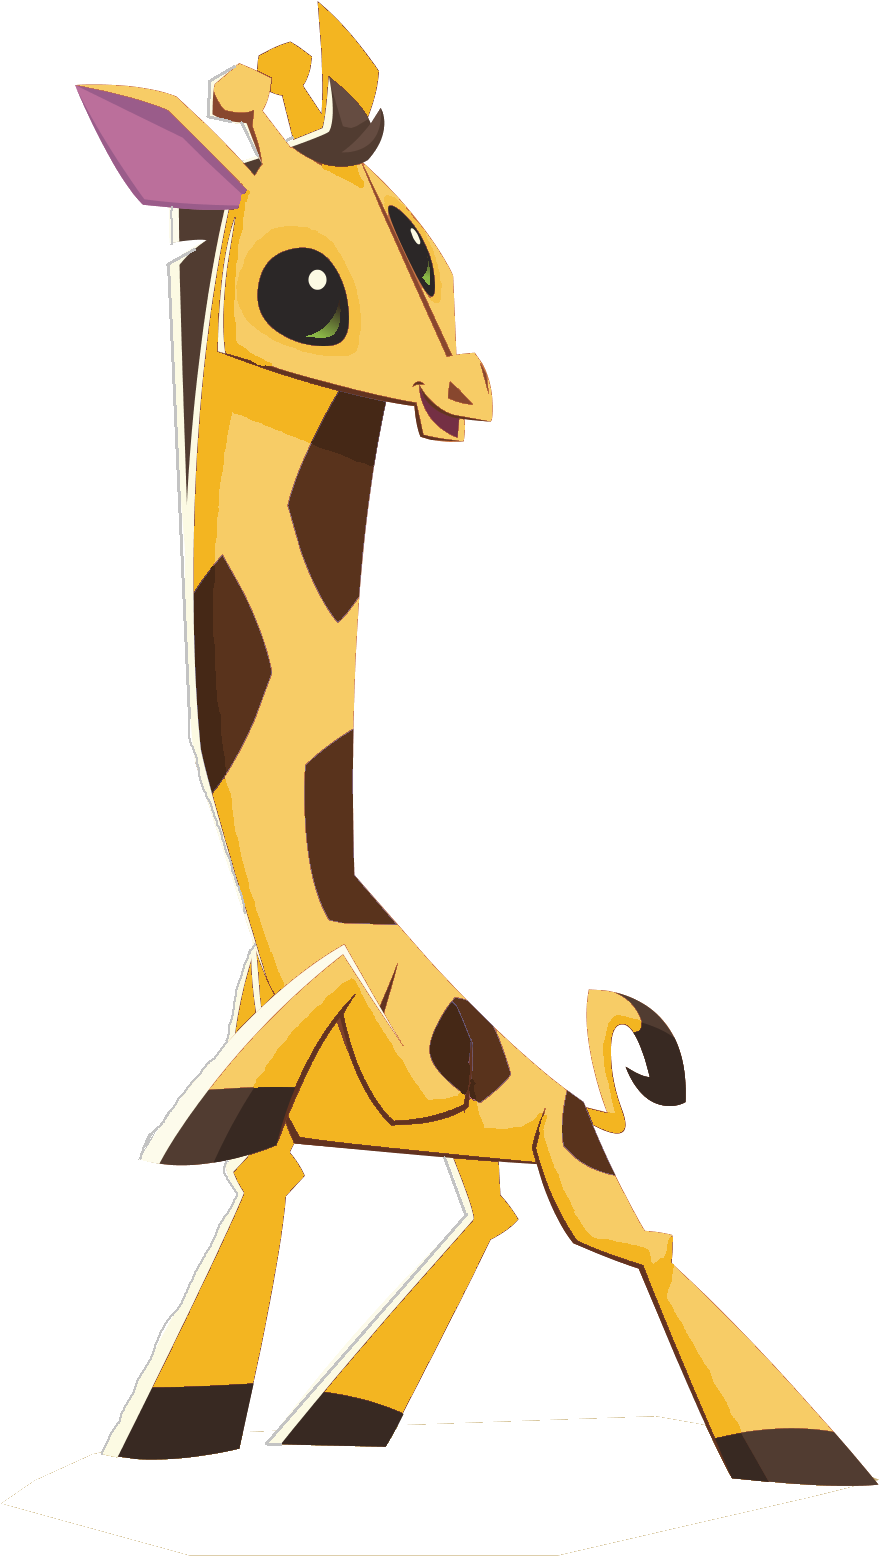 A Cartoon Giraffe Standing On Its Hind Legs